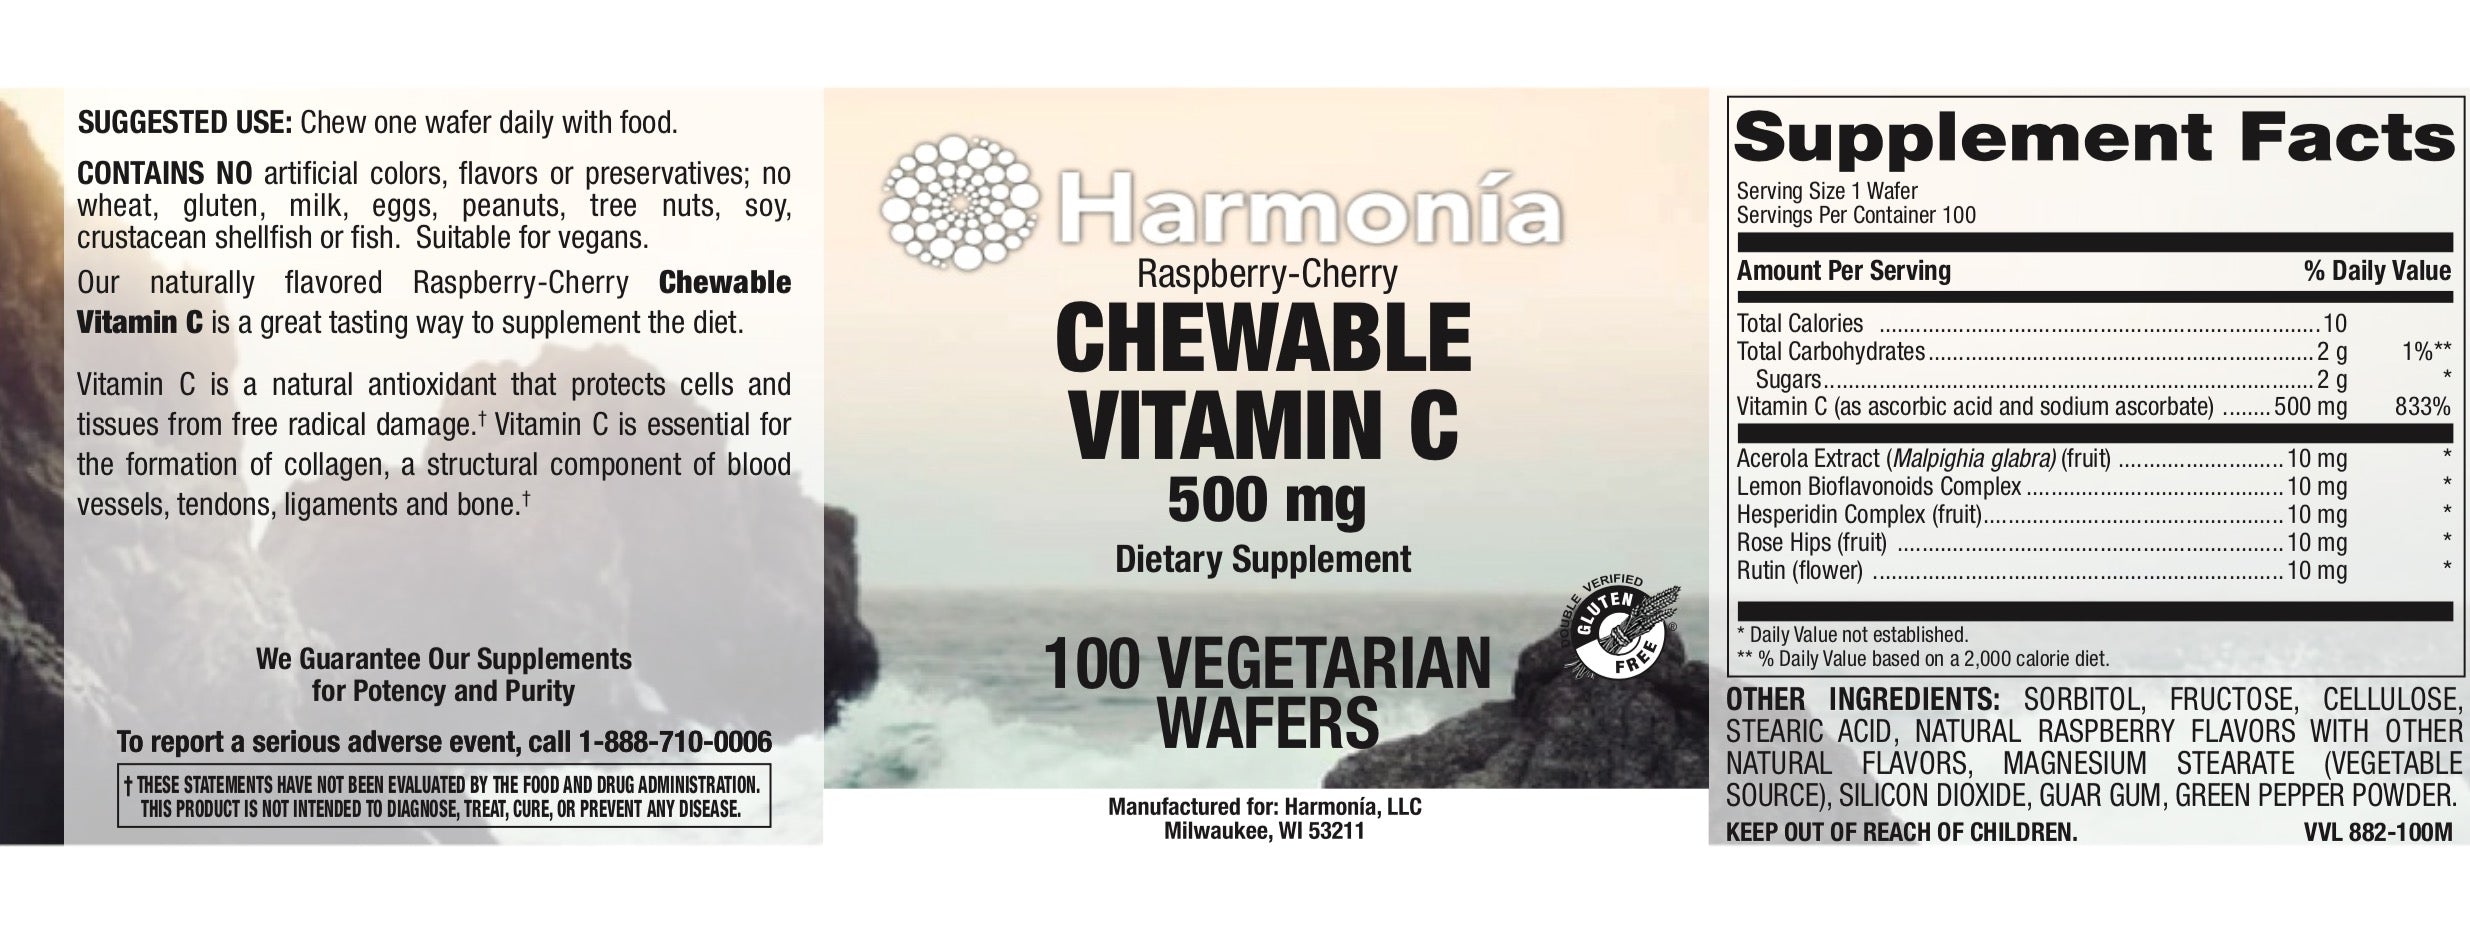 Chewable Vitamin C (Sweet & Tart Raspberry-Cherry) 500mg